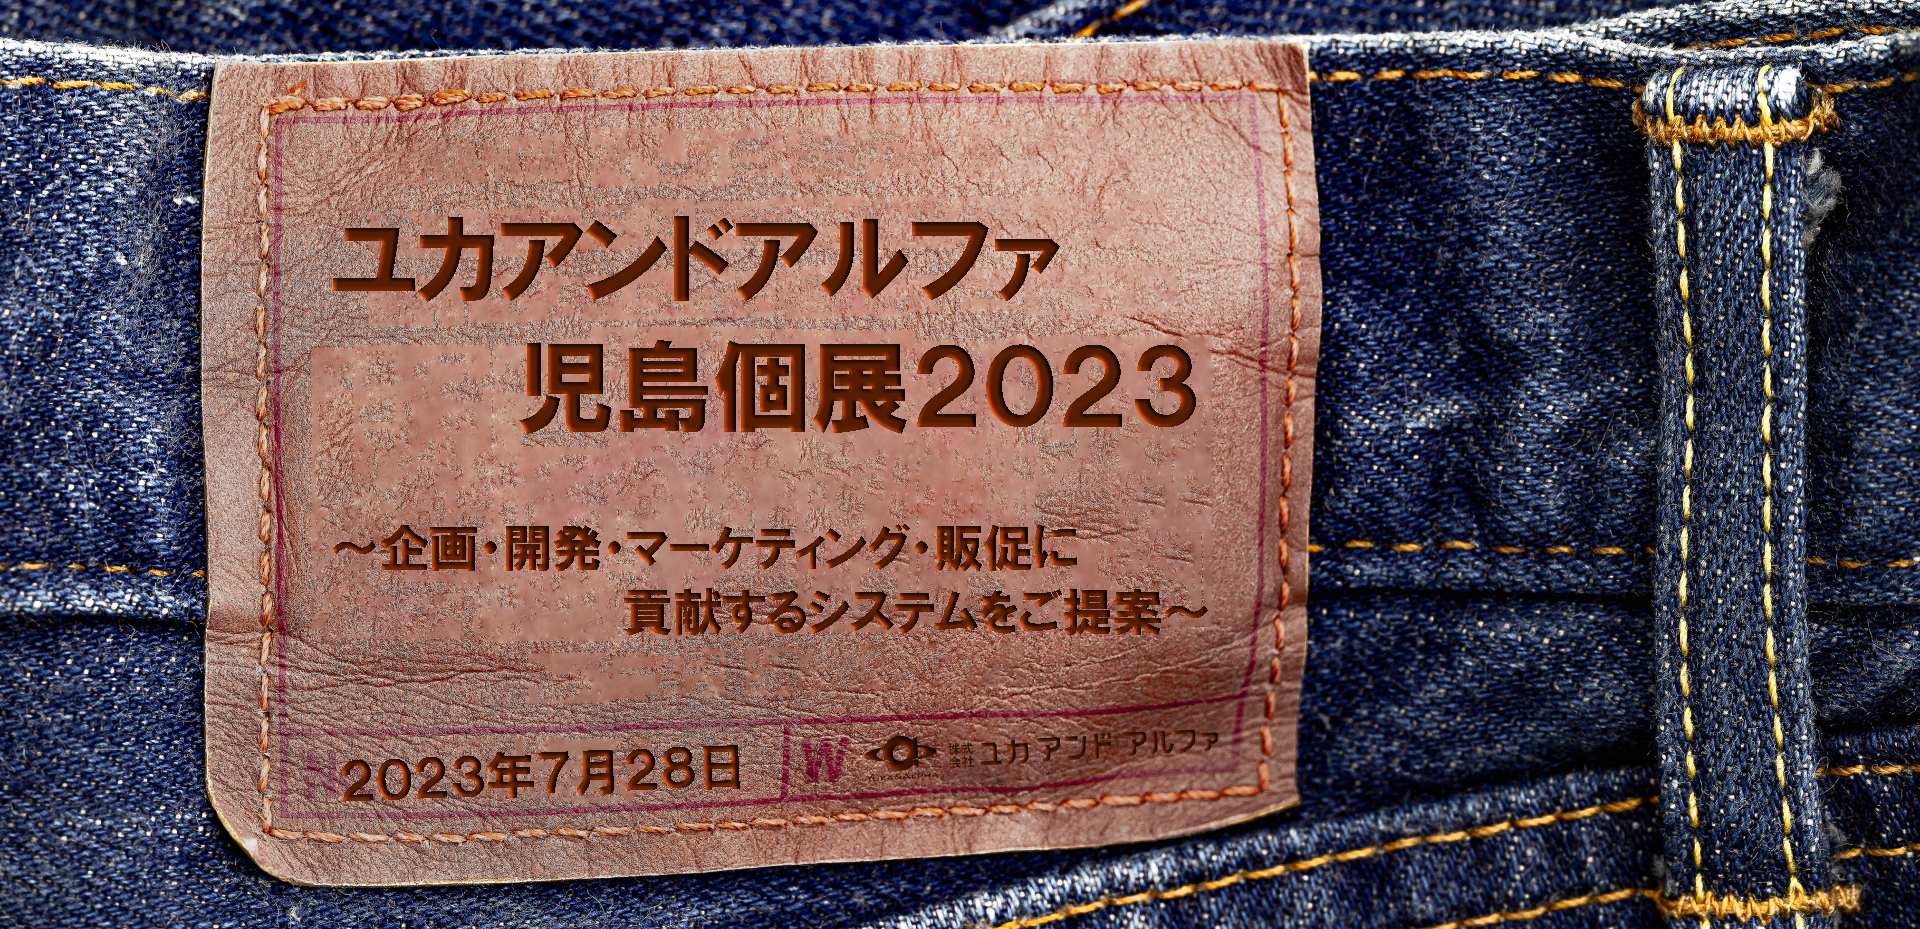 Kojima 2023